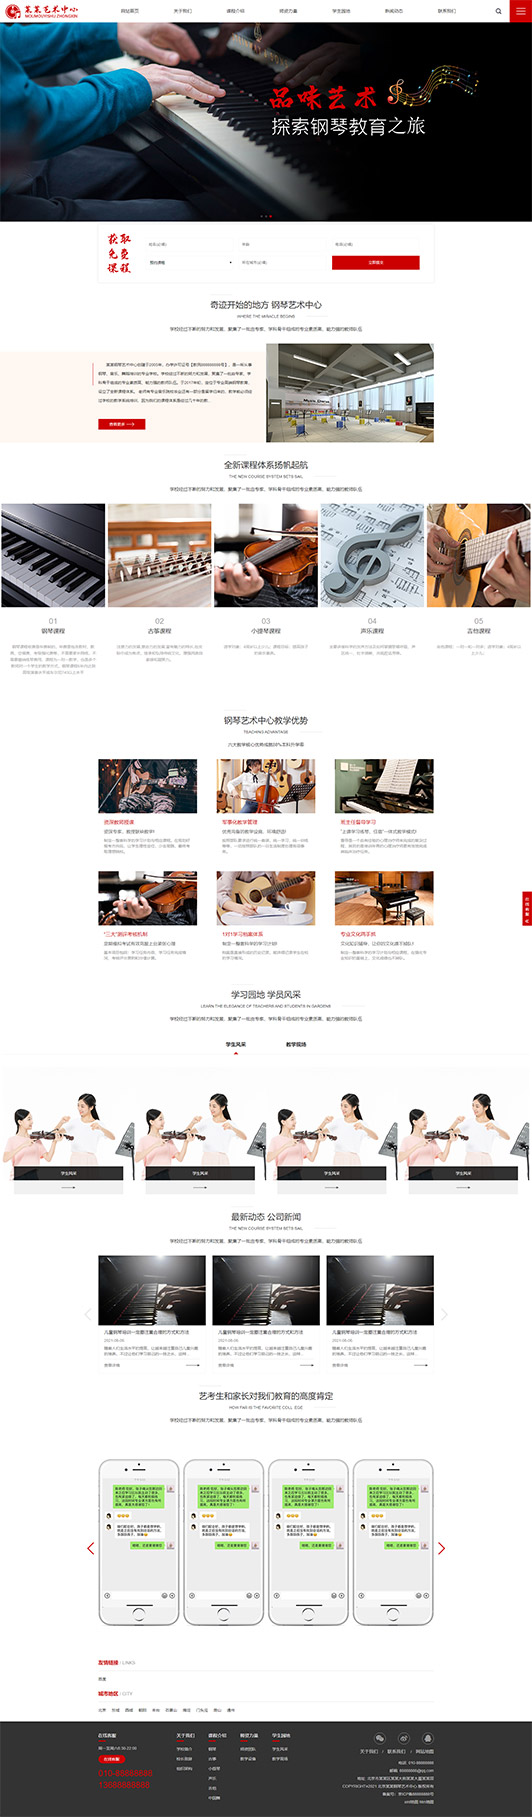 濮阳钢琴艺术培训公司响应式企业网站